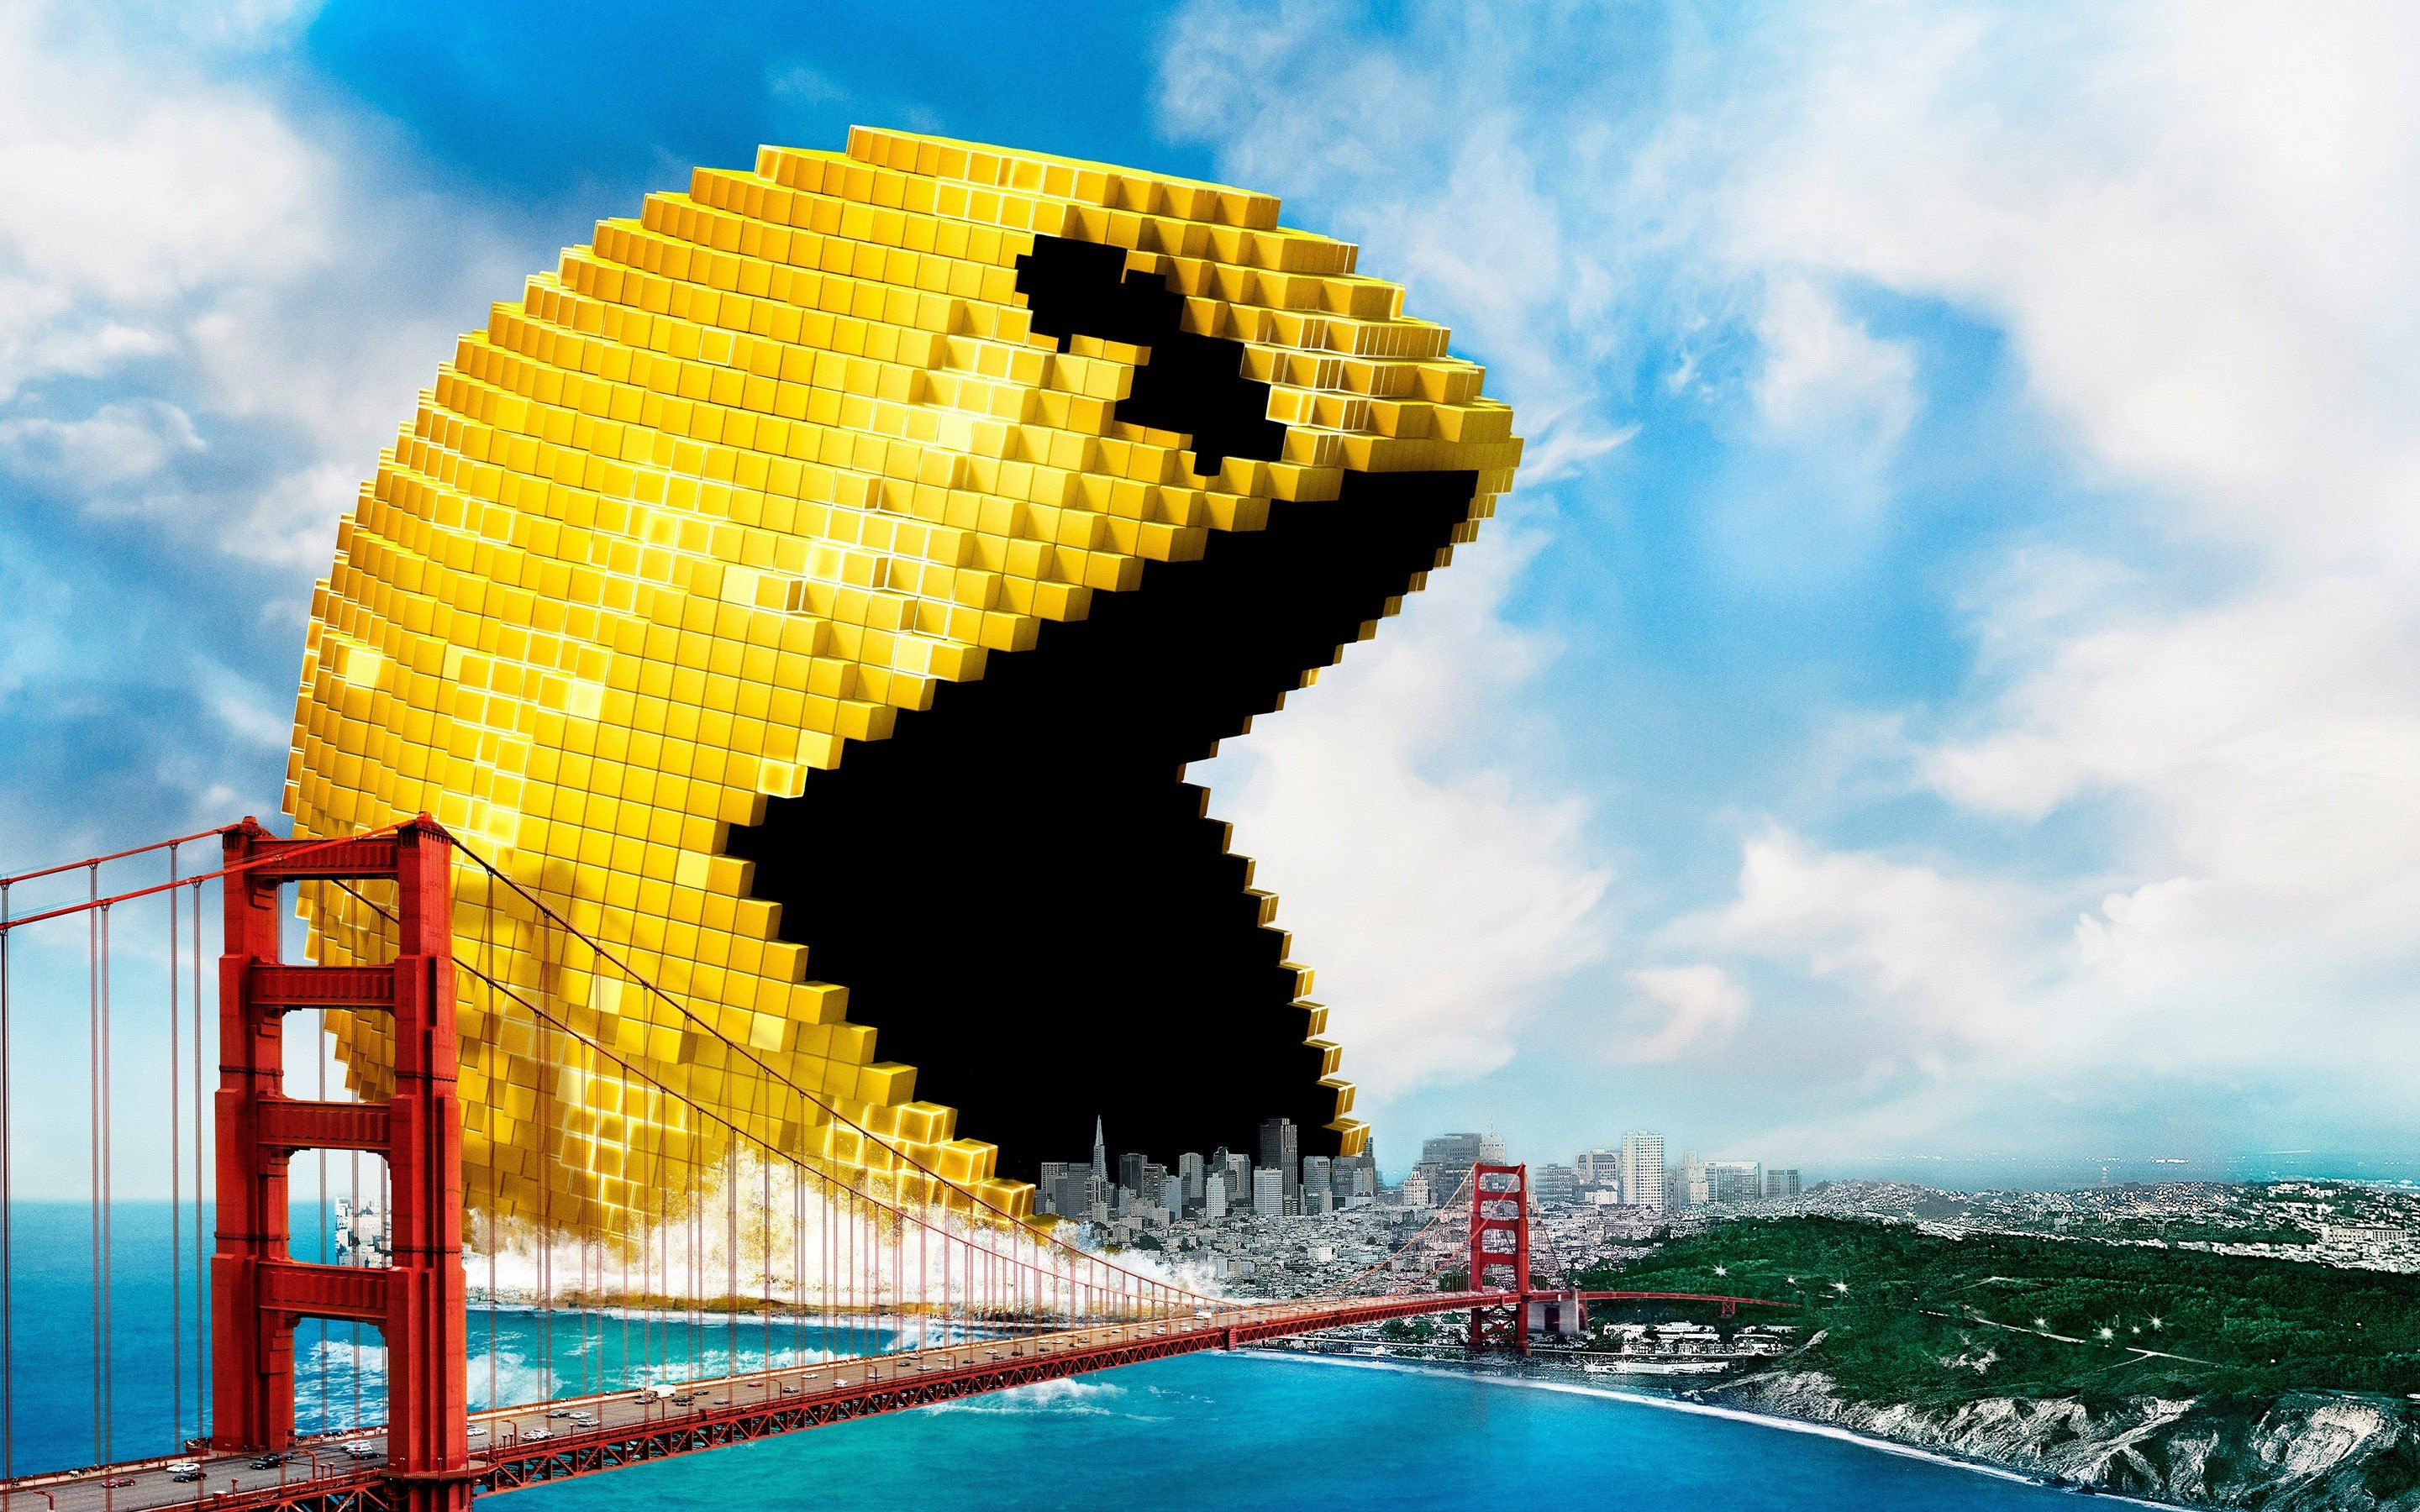 Fondos de pantalla Pacman de la película Pixels